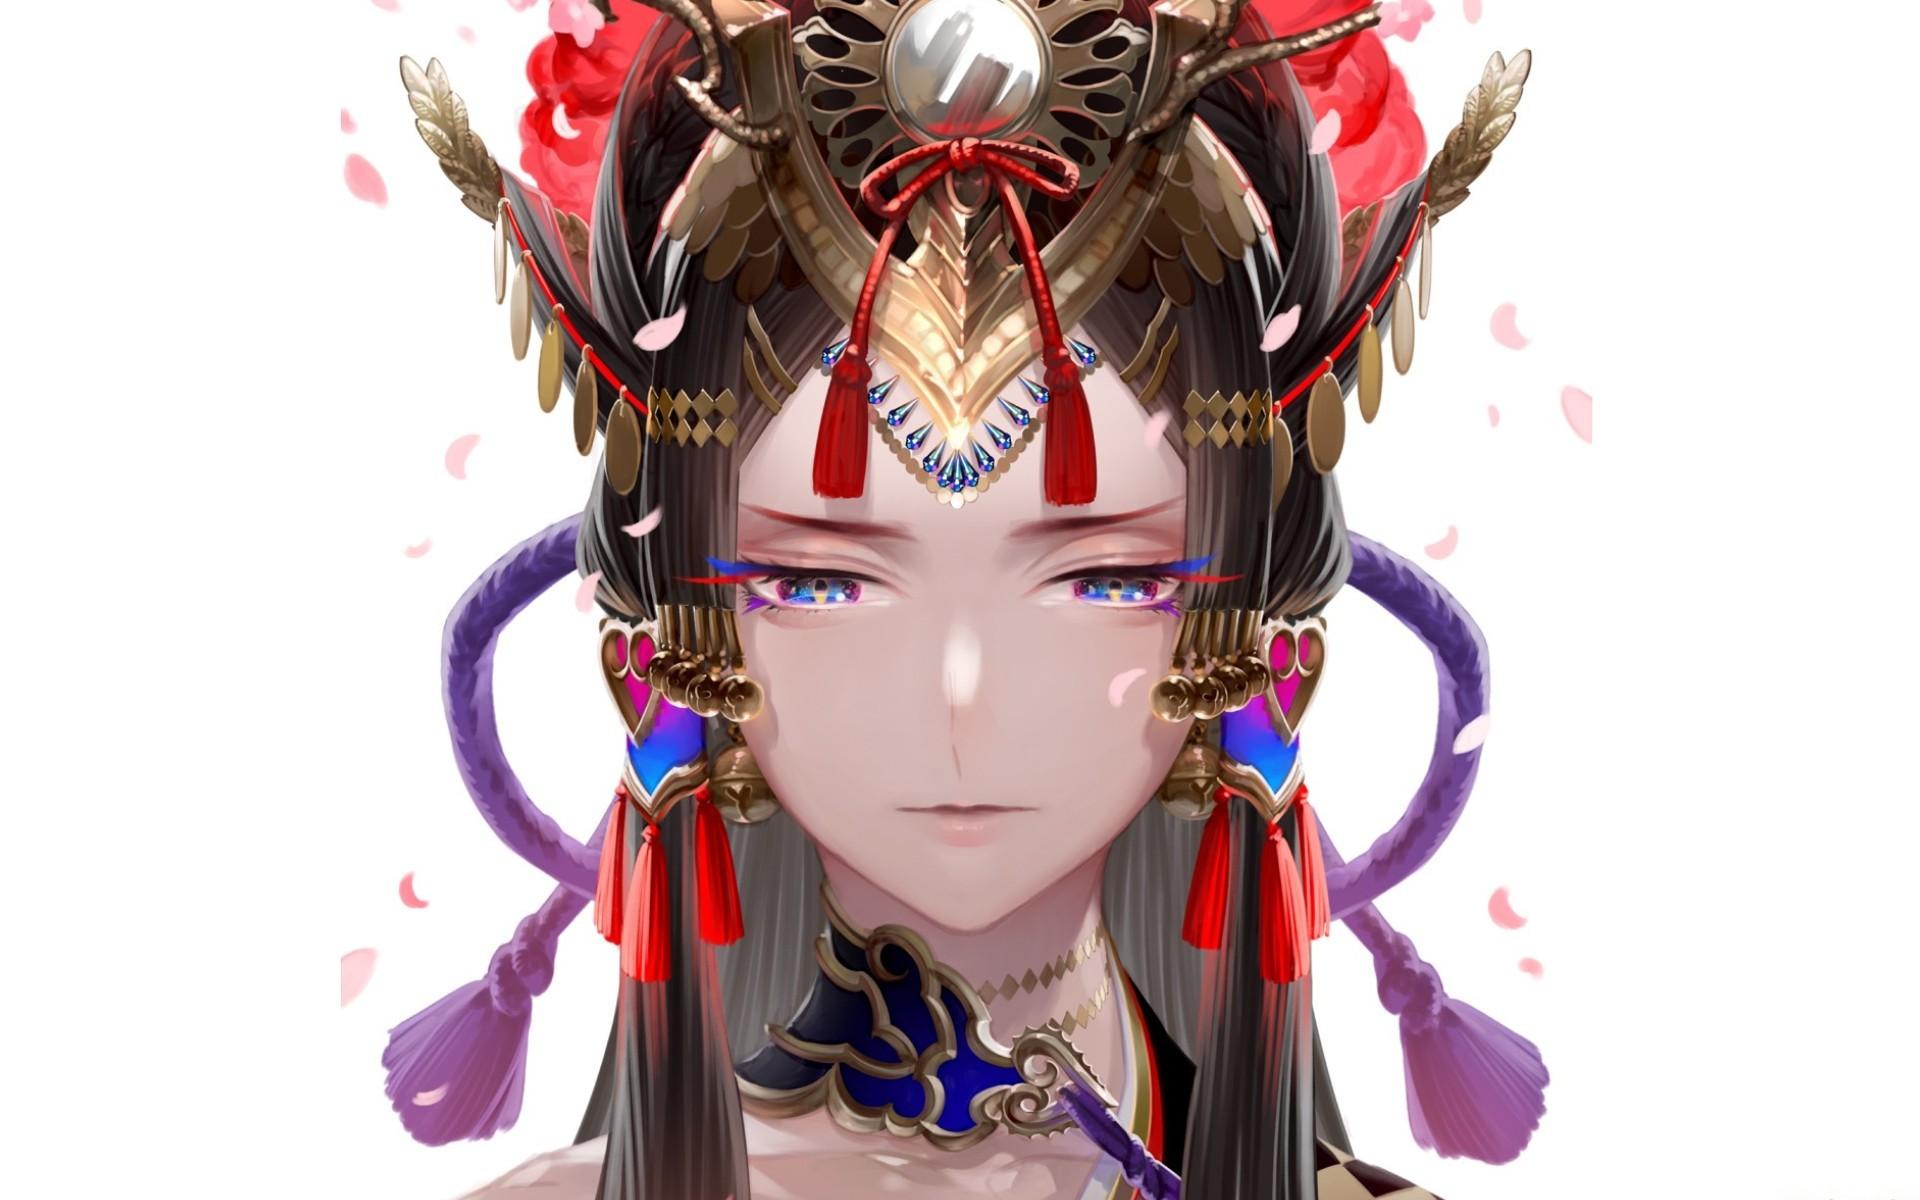 Sad geisha with a colorful hat HD desktop wallpaper, Widescreen